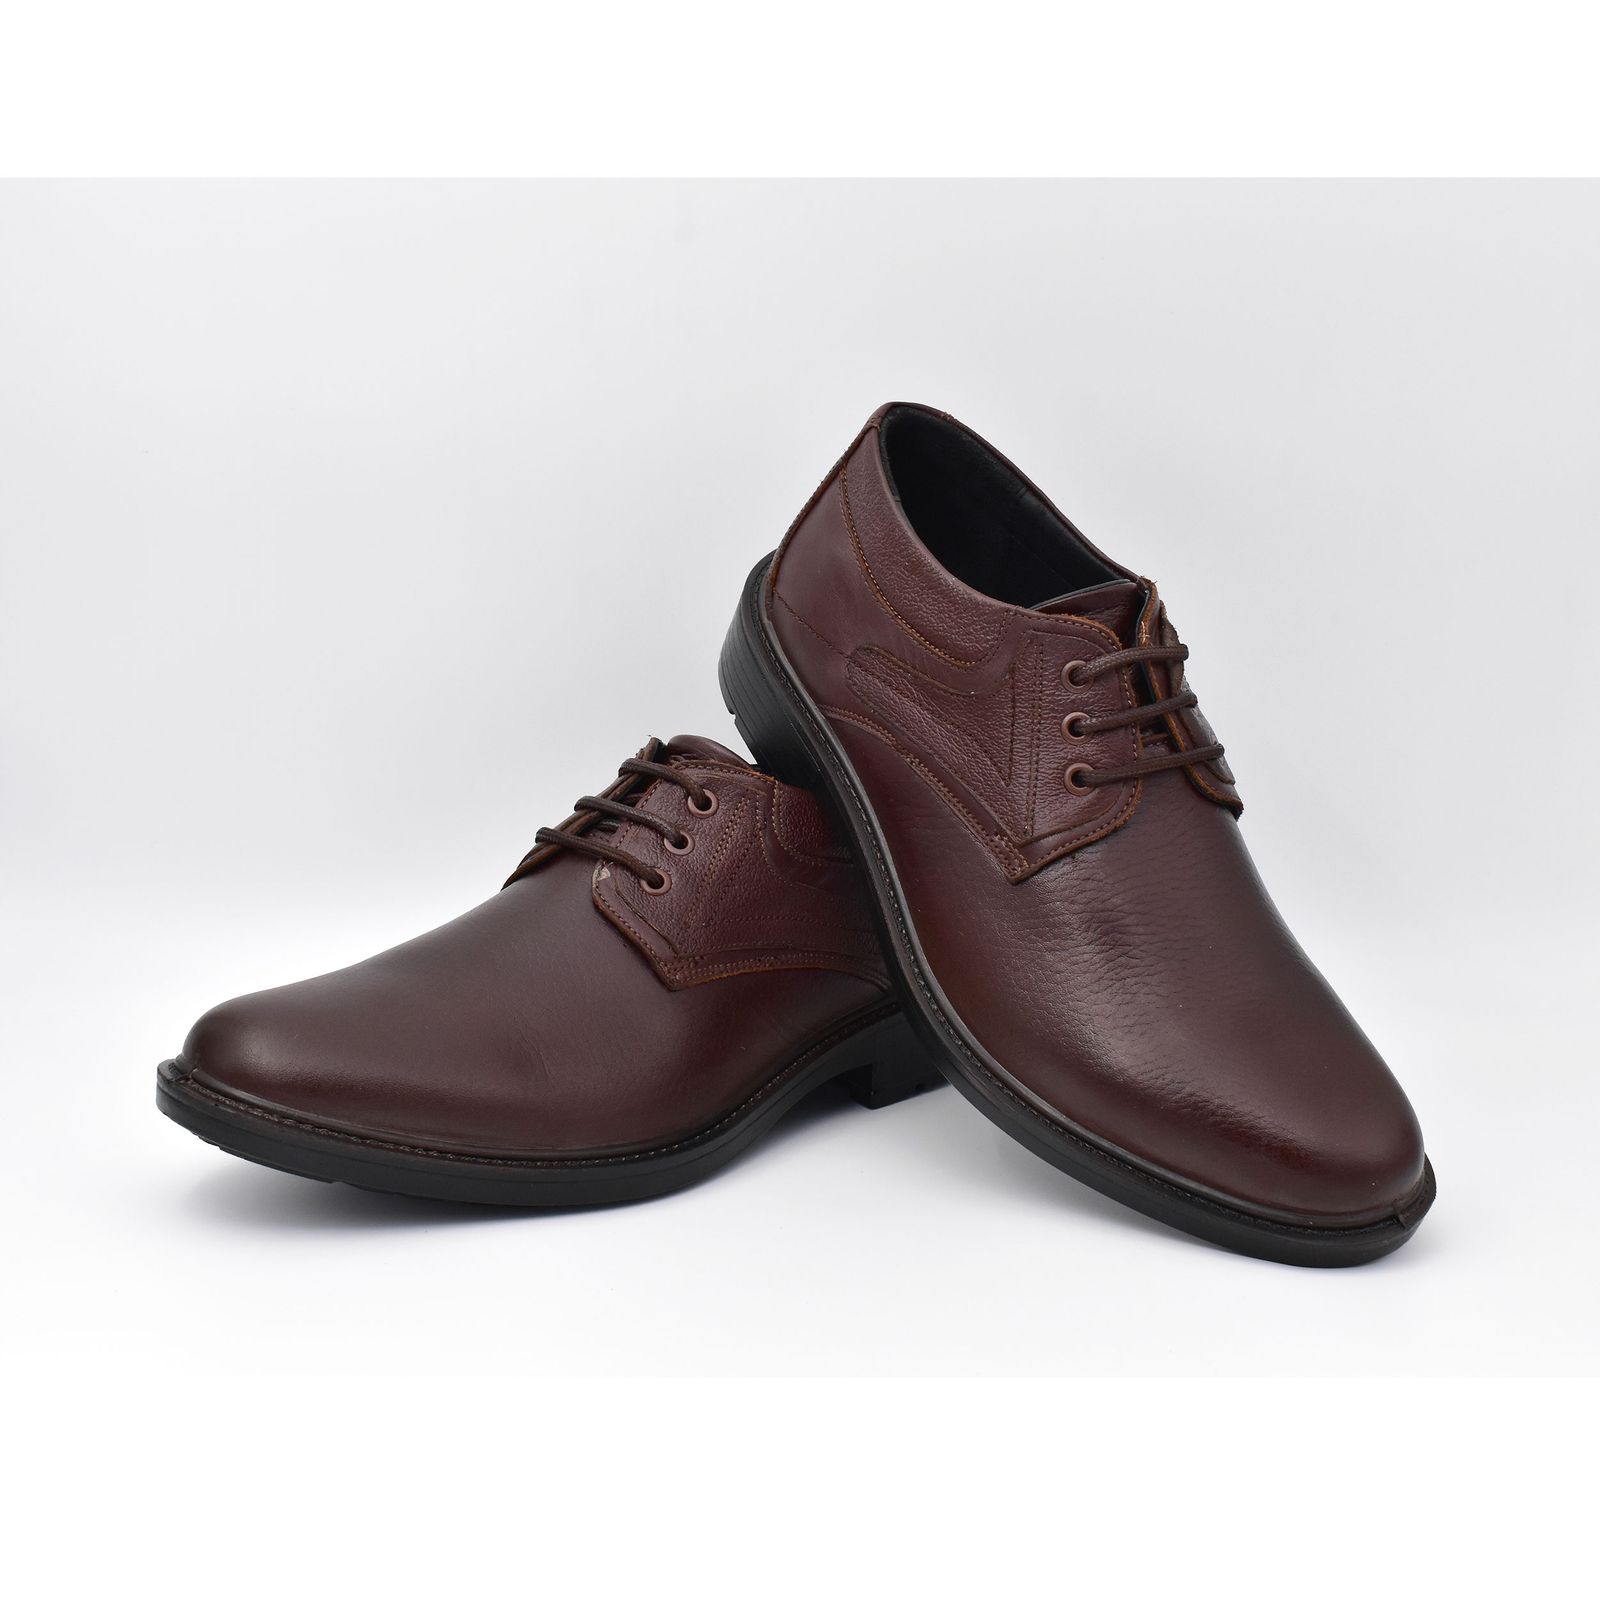 کفش مردانه پاما مدل Morano کد G1186 -  - 6